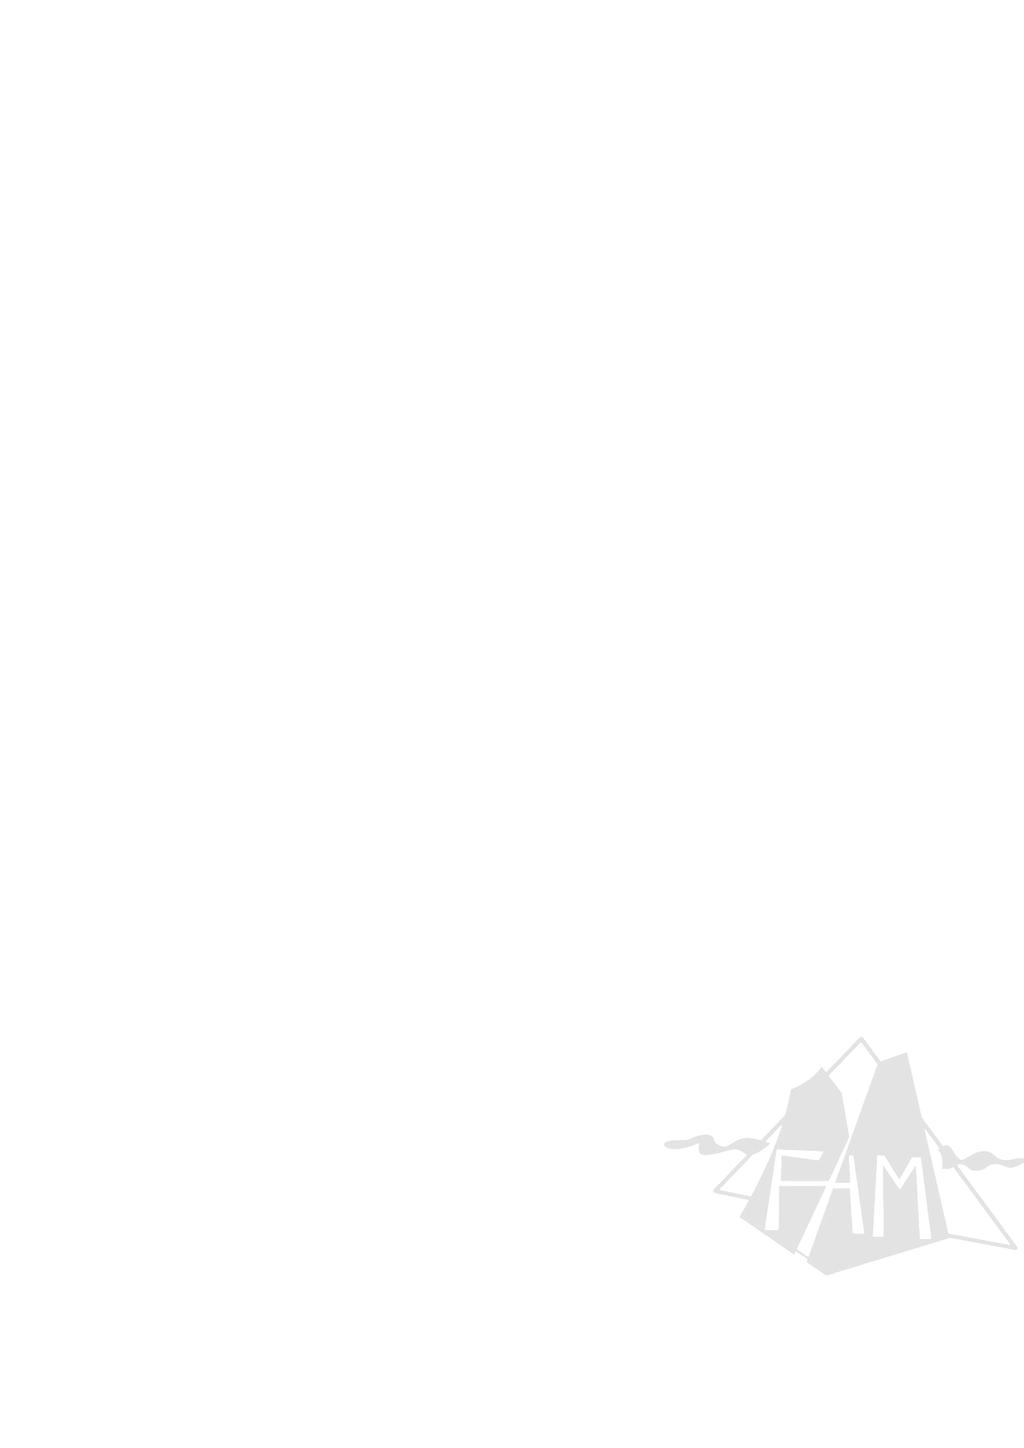 pág 1 / 5 Premios FAM 2016 a las mejores actividades deportivas no competitivas La Federación Andaluza de Montañismo pretende reconocer aquellas actividades deportivas no competitivas que sus